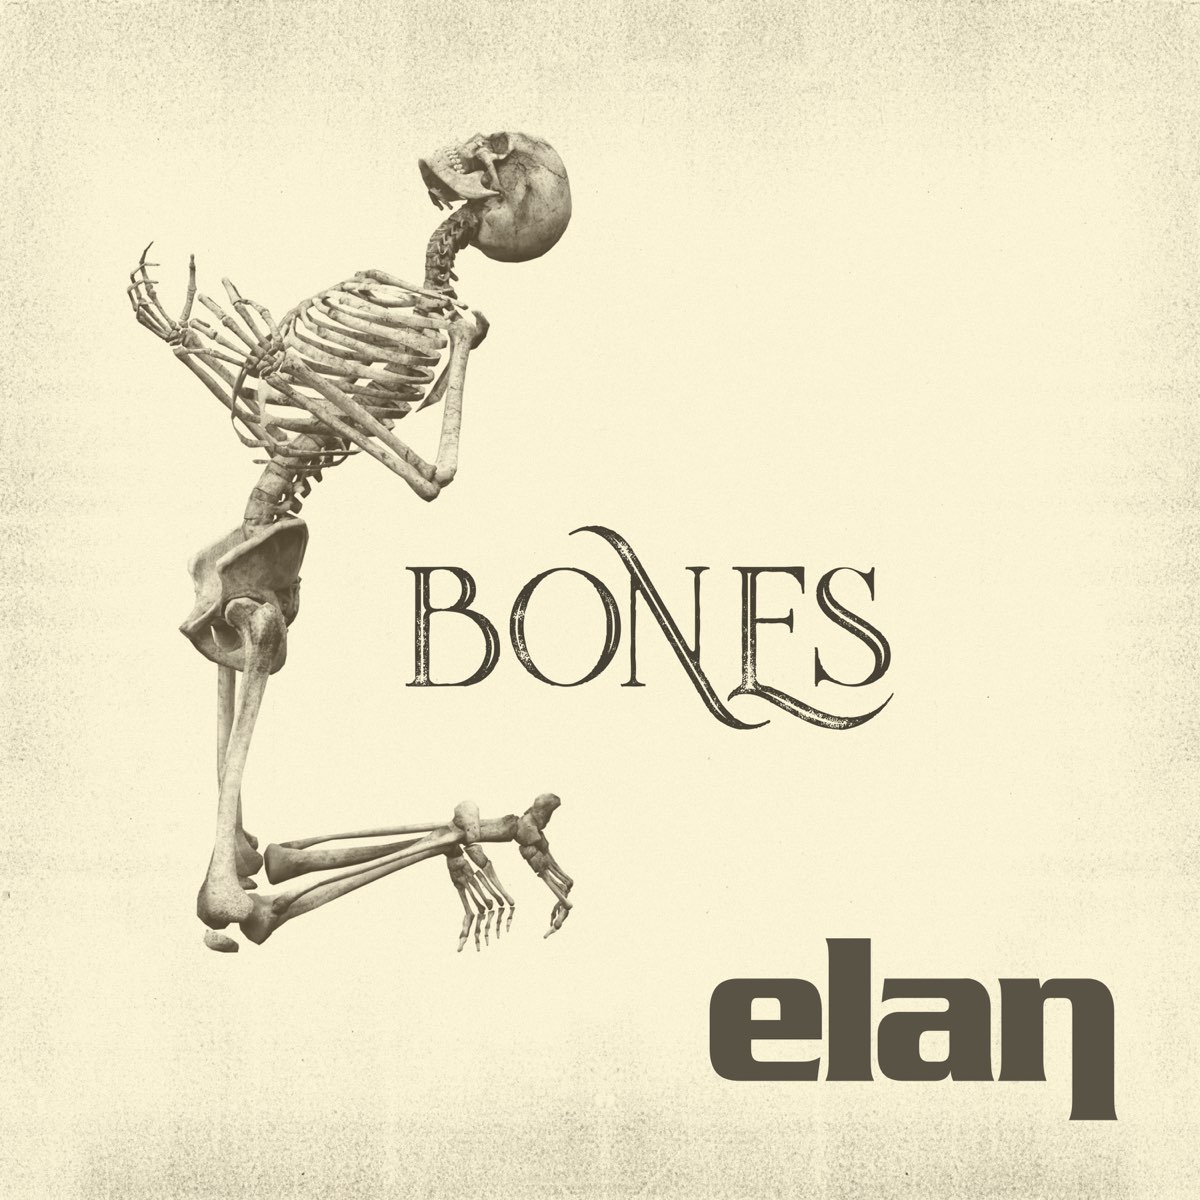 Bones ctrlaltdelete. Bones альбомы. Bones обложки альбомов. Bones сингл. Bones фотоальбомов.